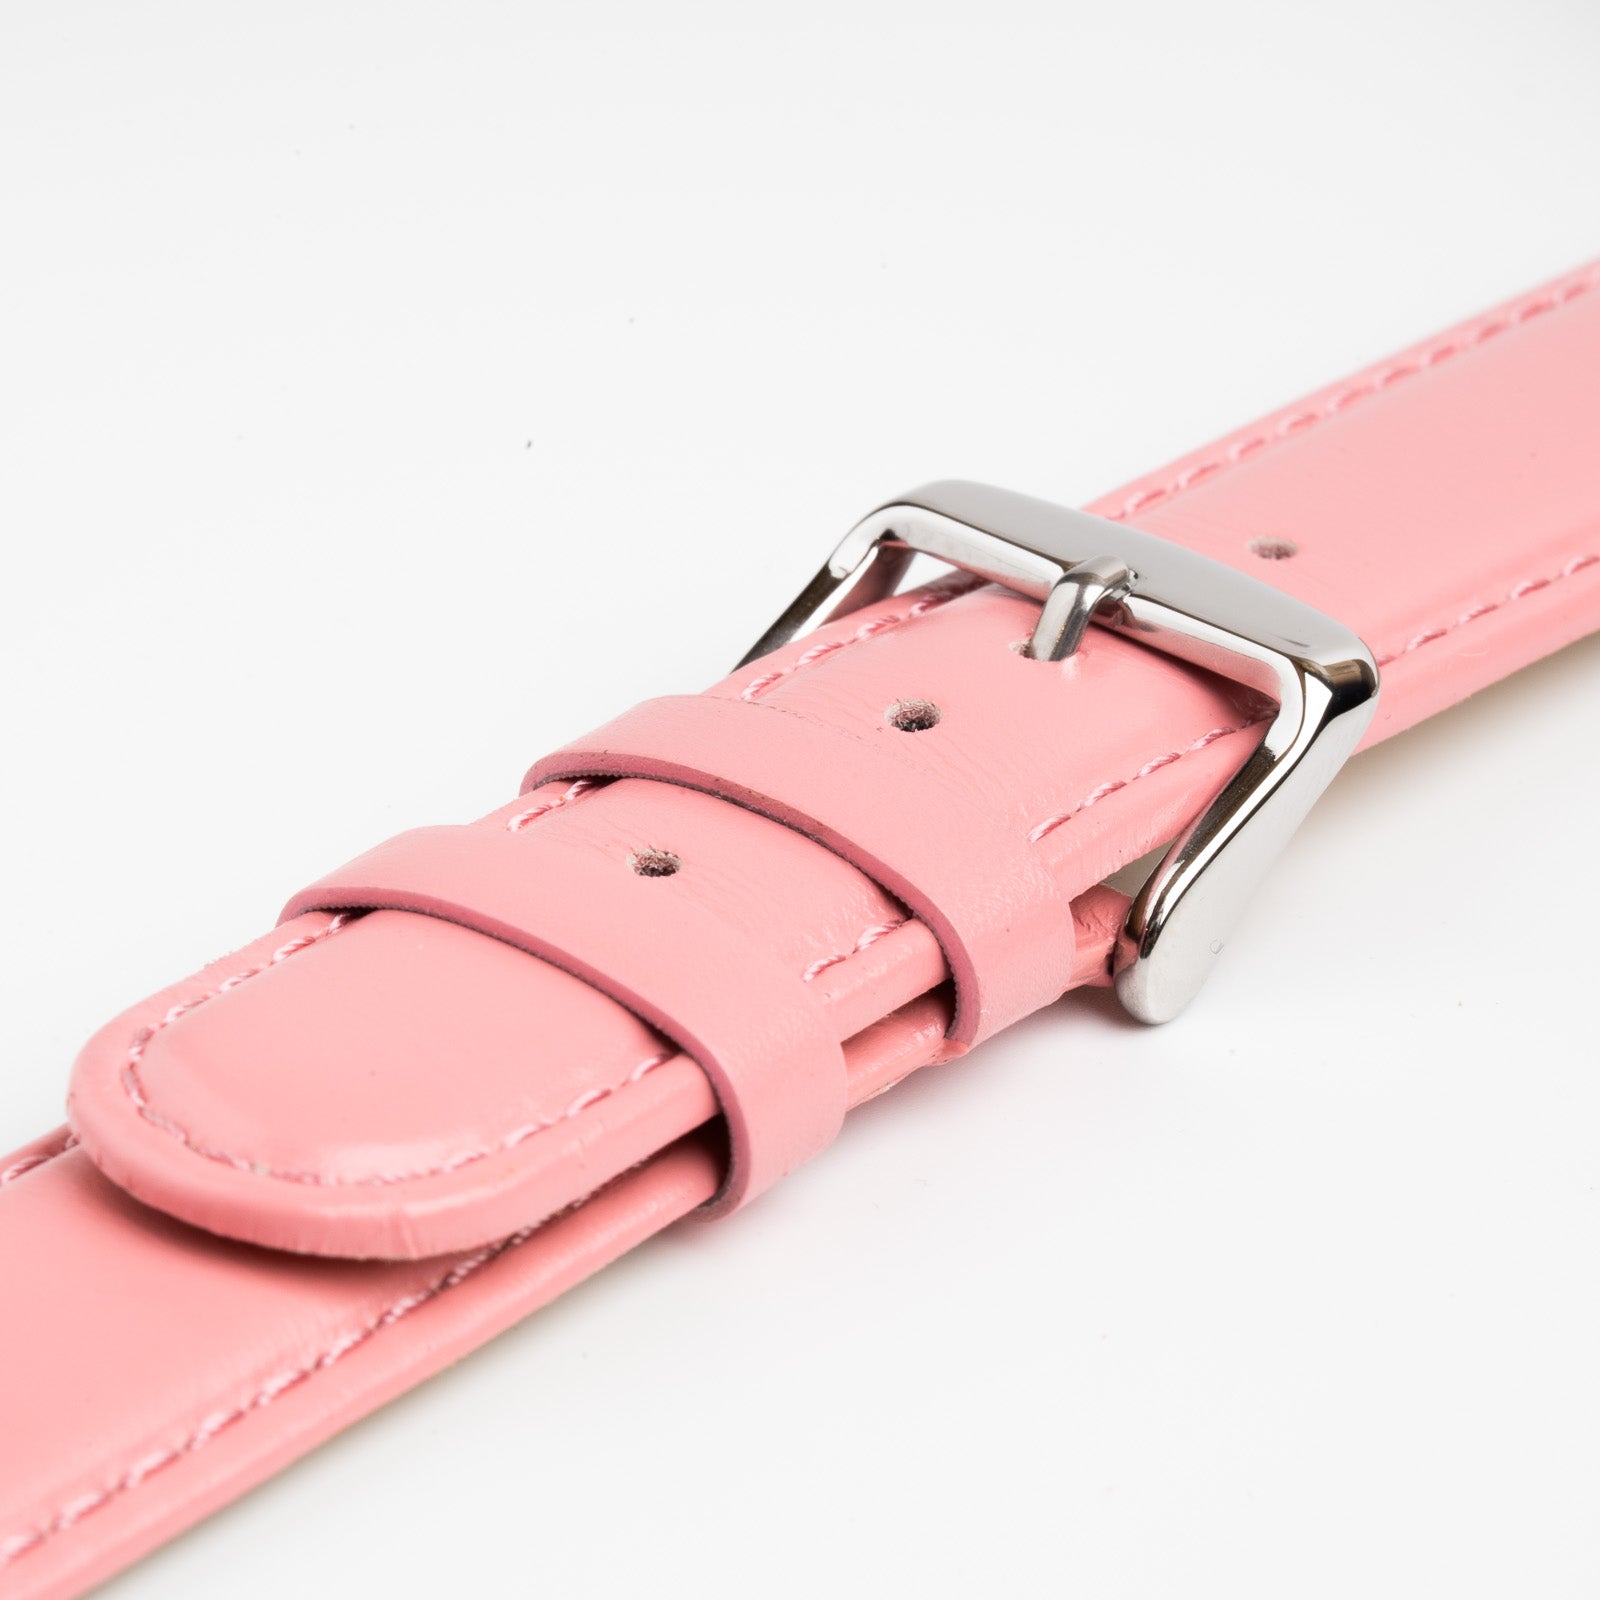 Henley Pink Watch Strap